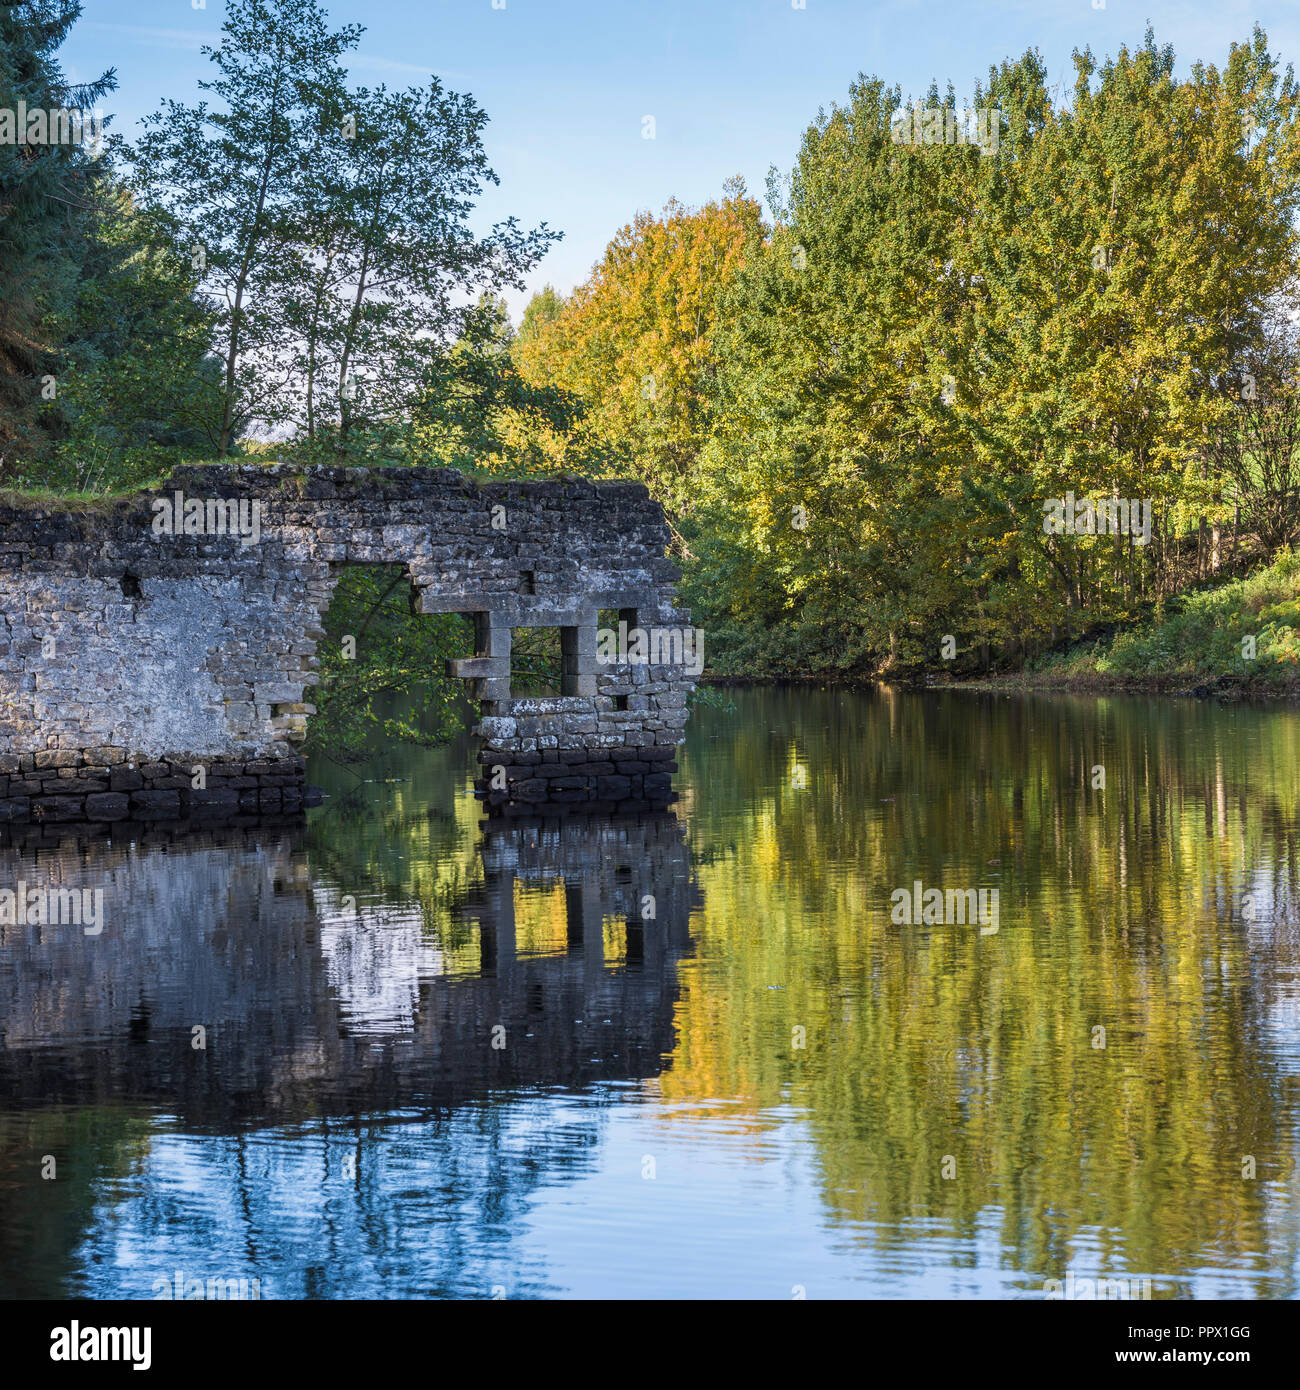 Malerischer Blick auf Thruscross Behälter mit zerbröckelnden Mauer von Flachs Mill Ruinen im Wasser spiegelt - Washburn Tal, North Yorkshire, England, UK. Stockfoto